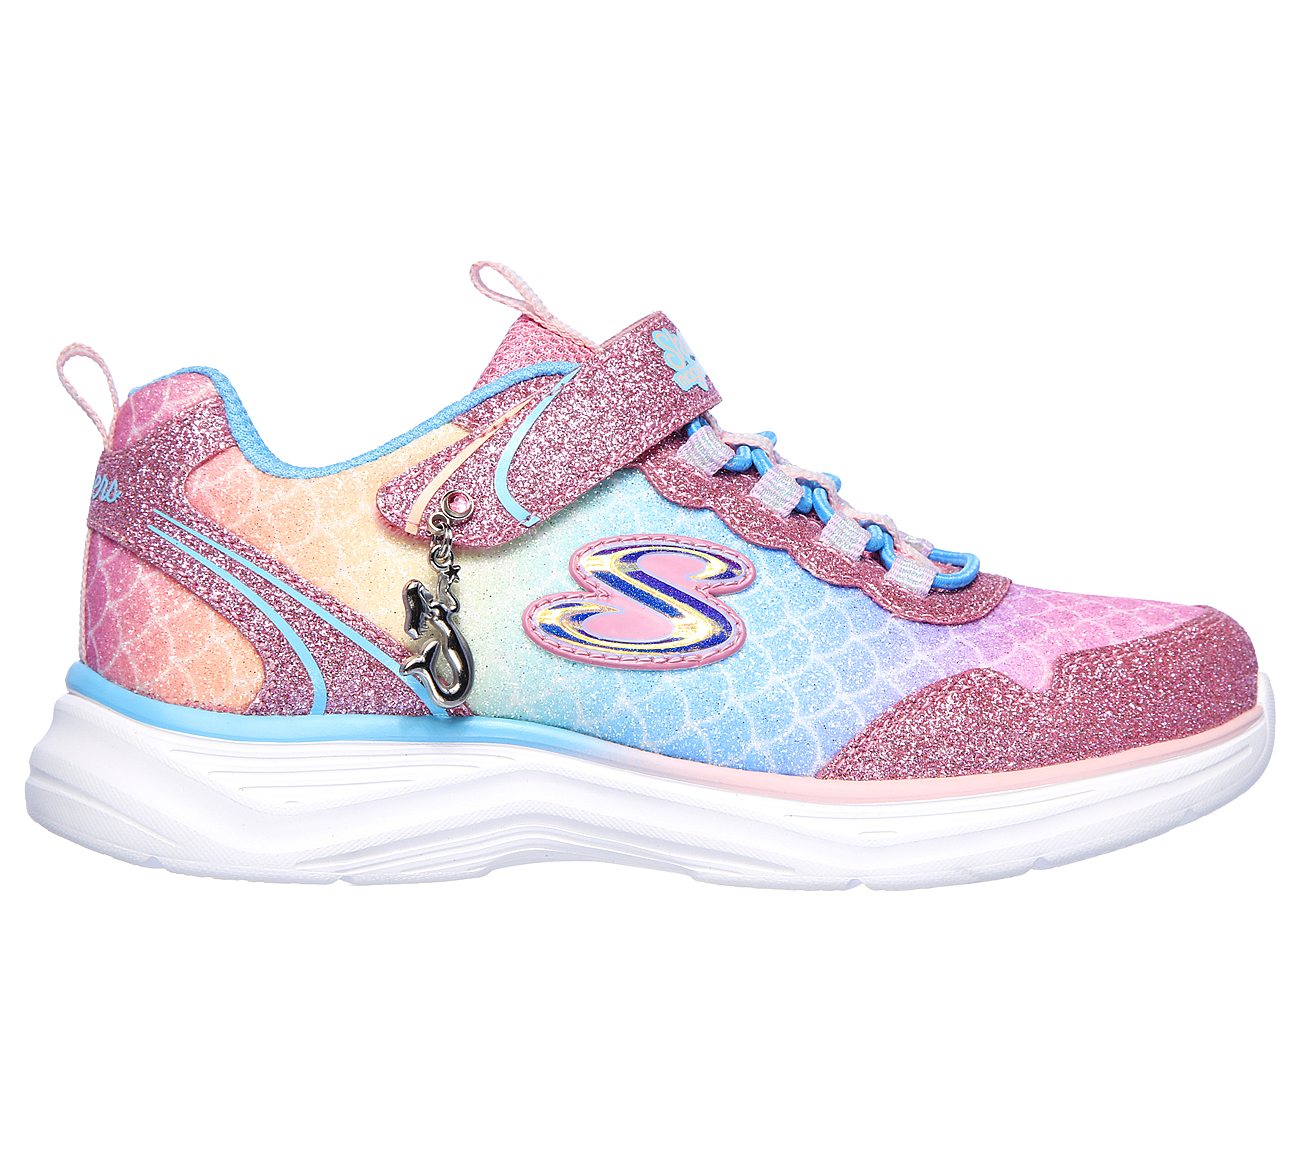 Sea Sparkle SKECHERS Sport Shoes